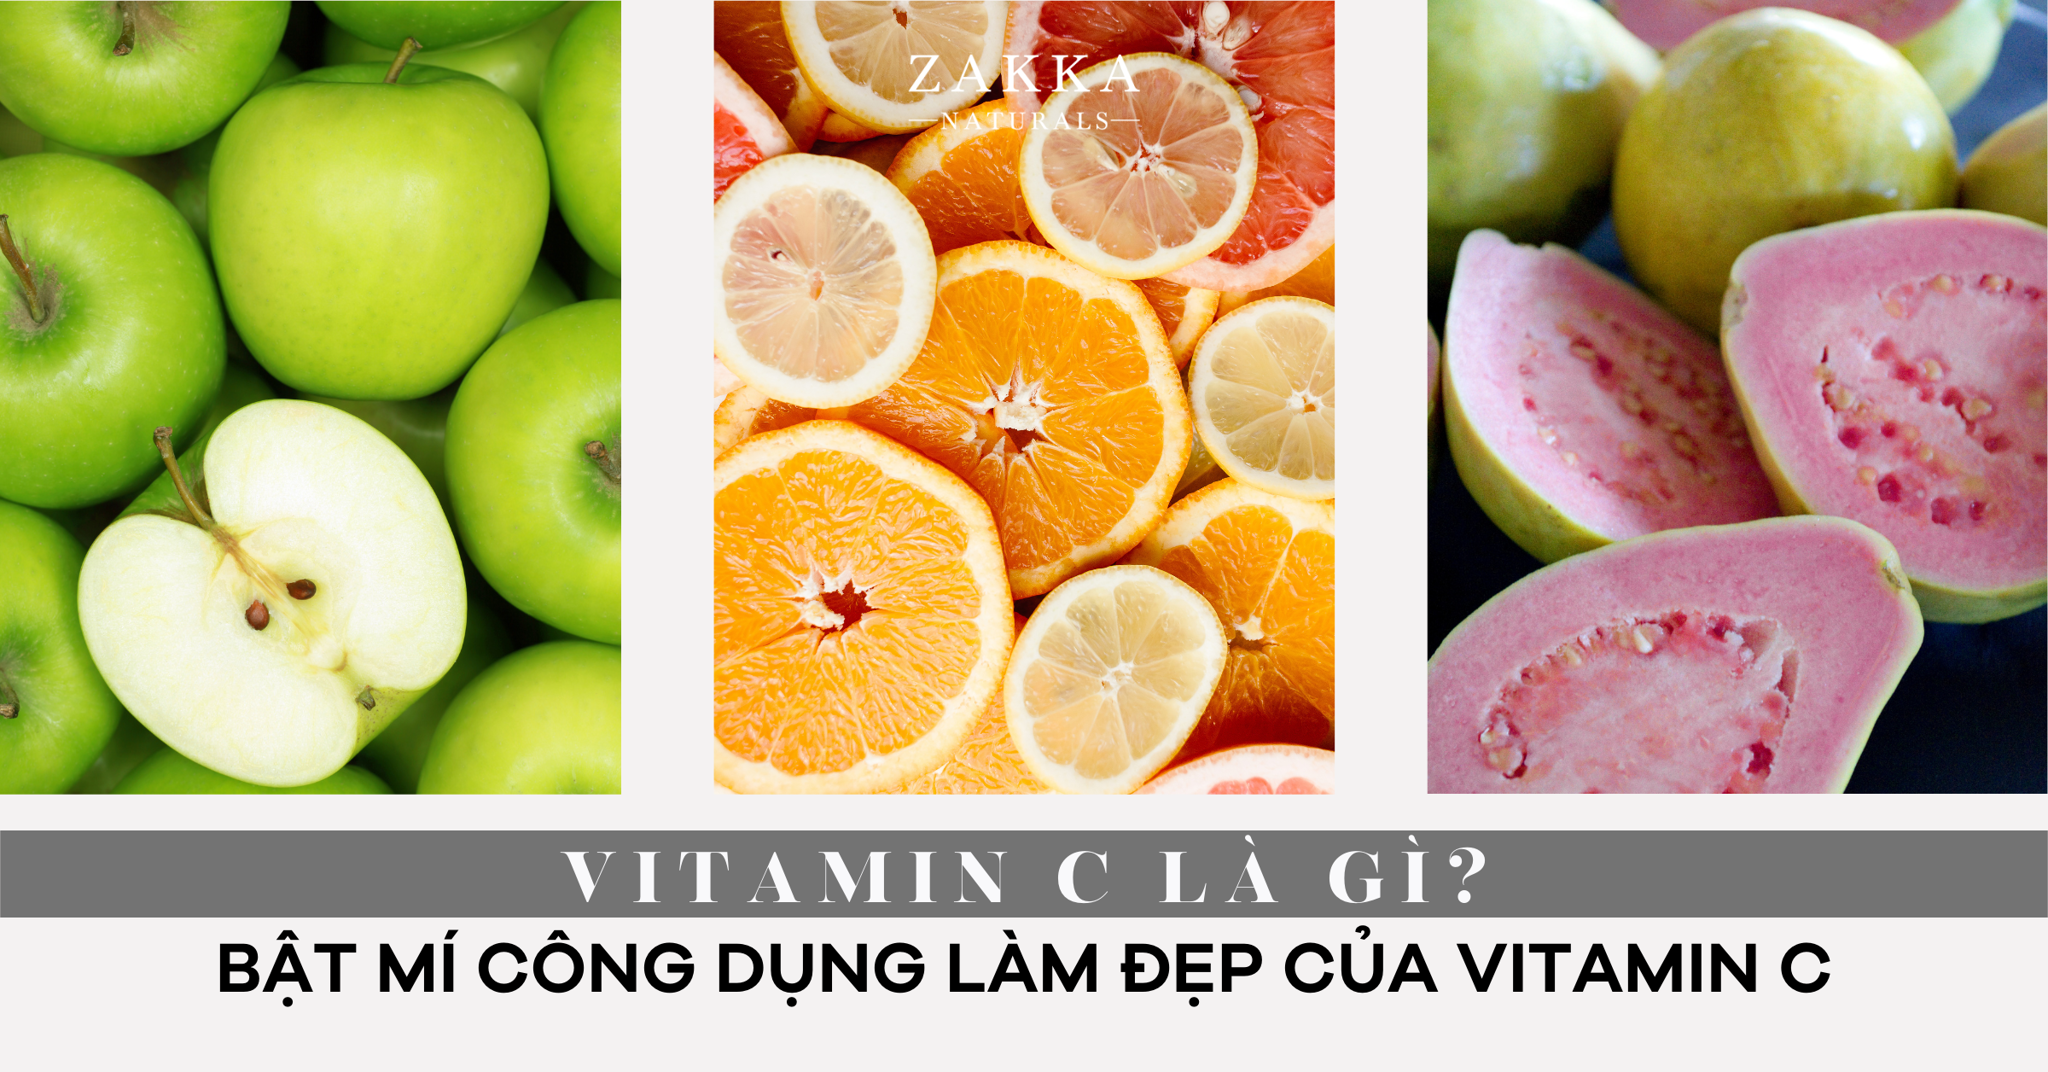 Vitamin C là gì? Bật mí về công dụng làm đẹp của Vitamin C